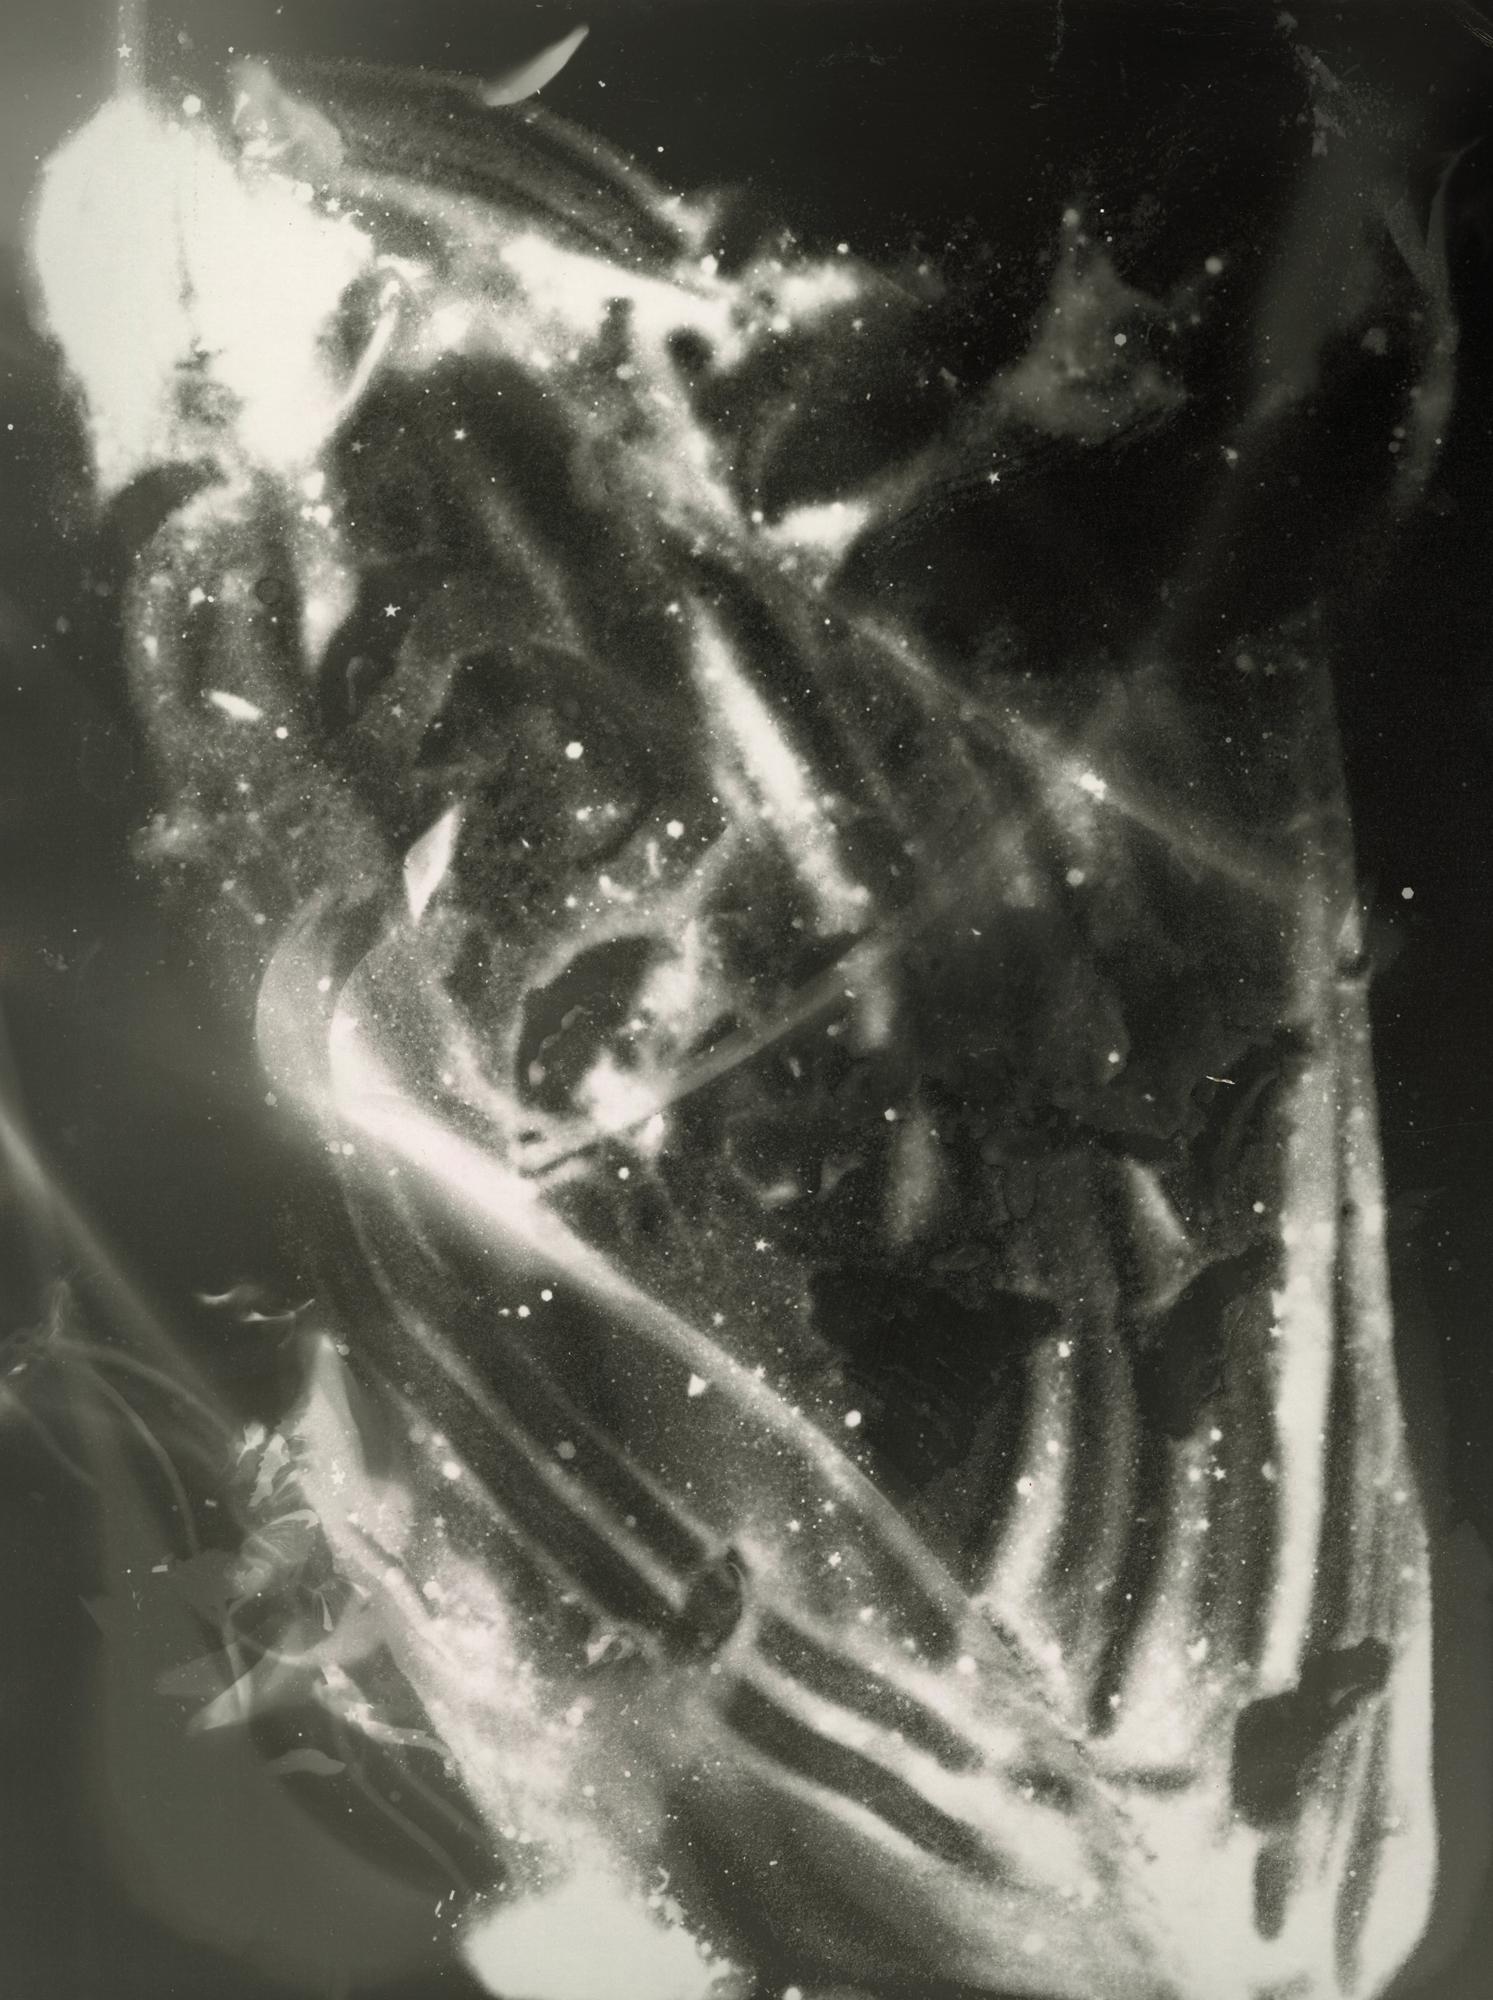 Kimberly Schneider Photography Abstract Photograph – Venus Flytrap - einzigartiges zeitgenössisches abstraktes Fotogramm aus Gelatinesilber in Dunkelkammer